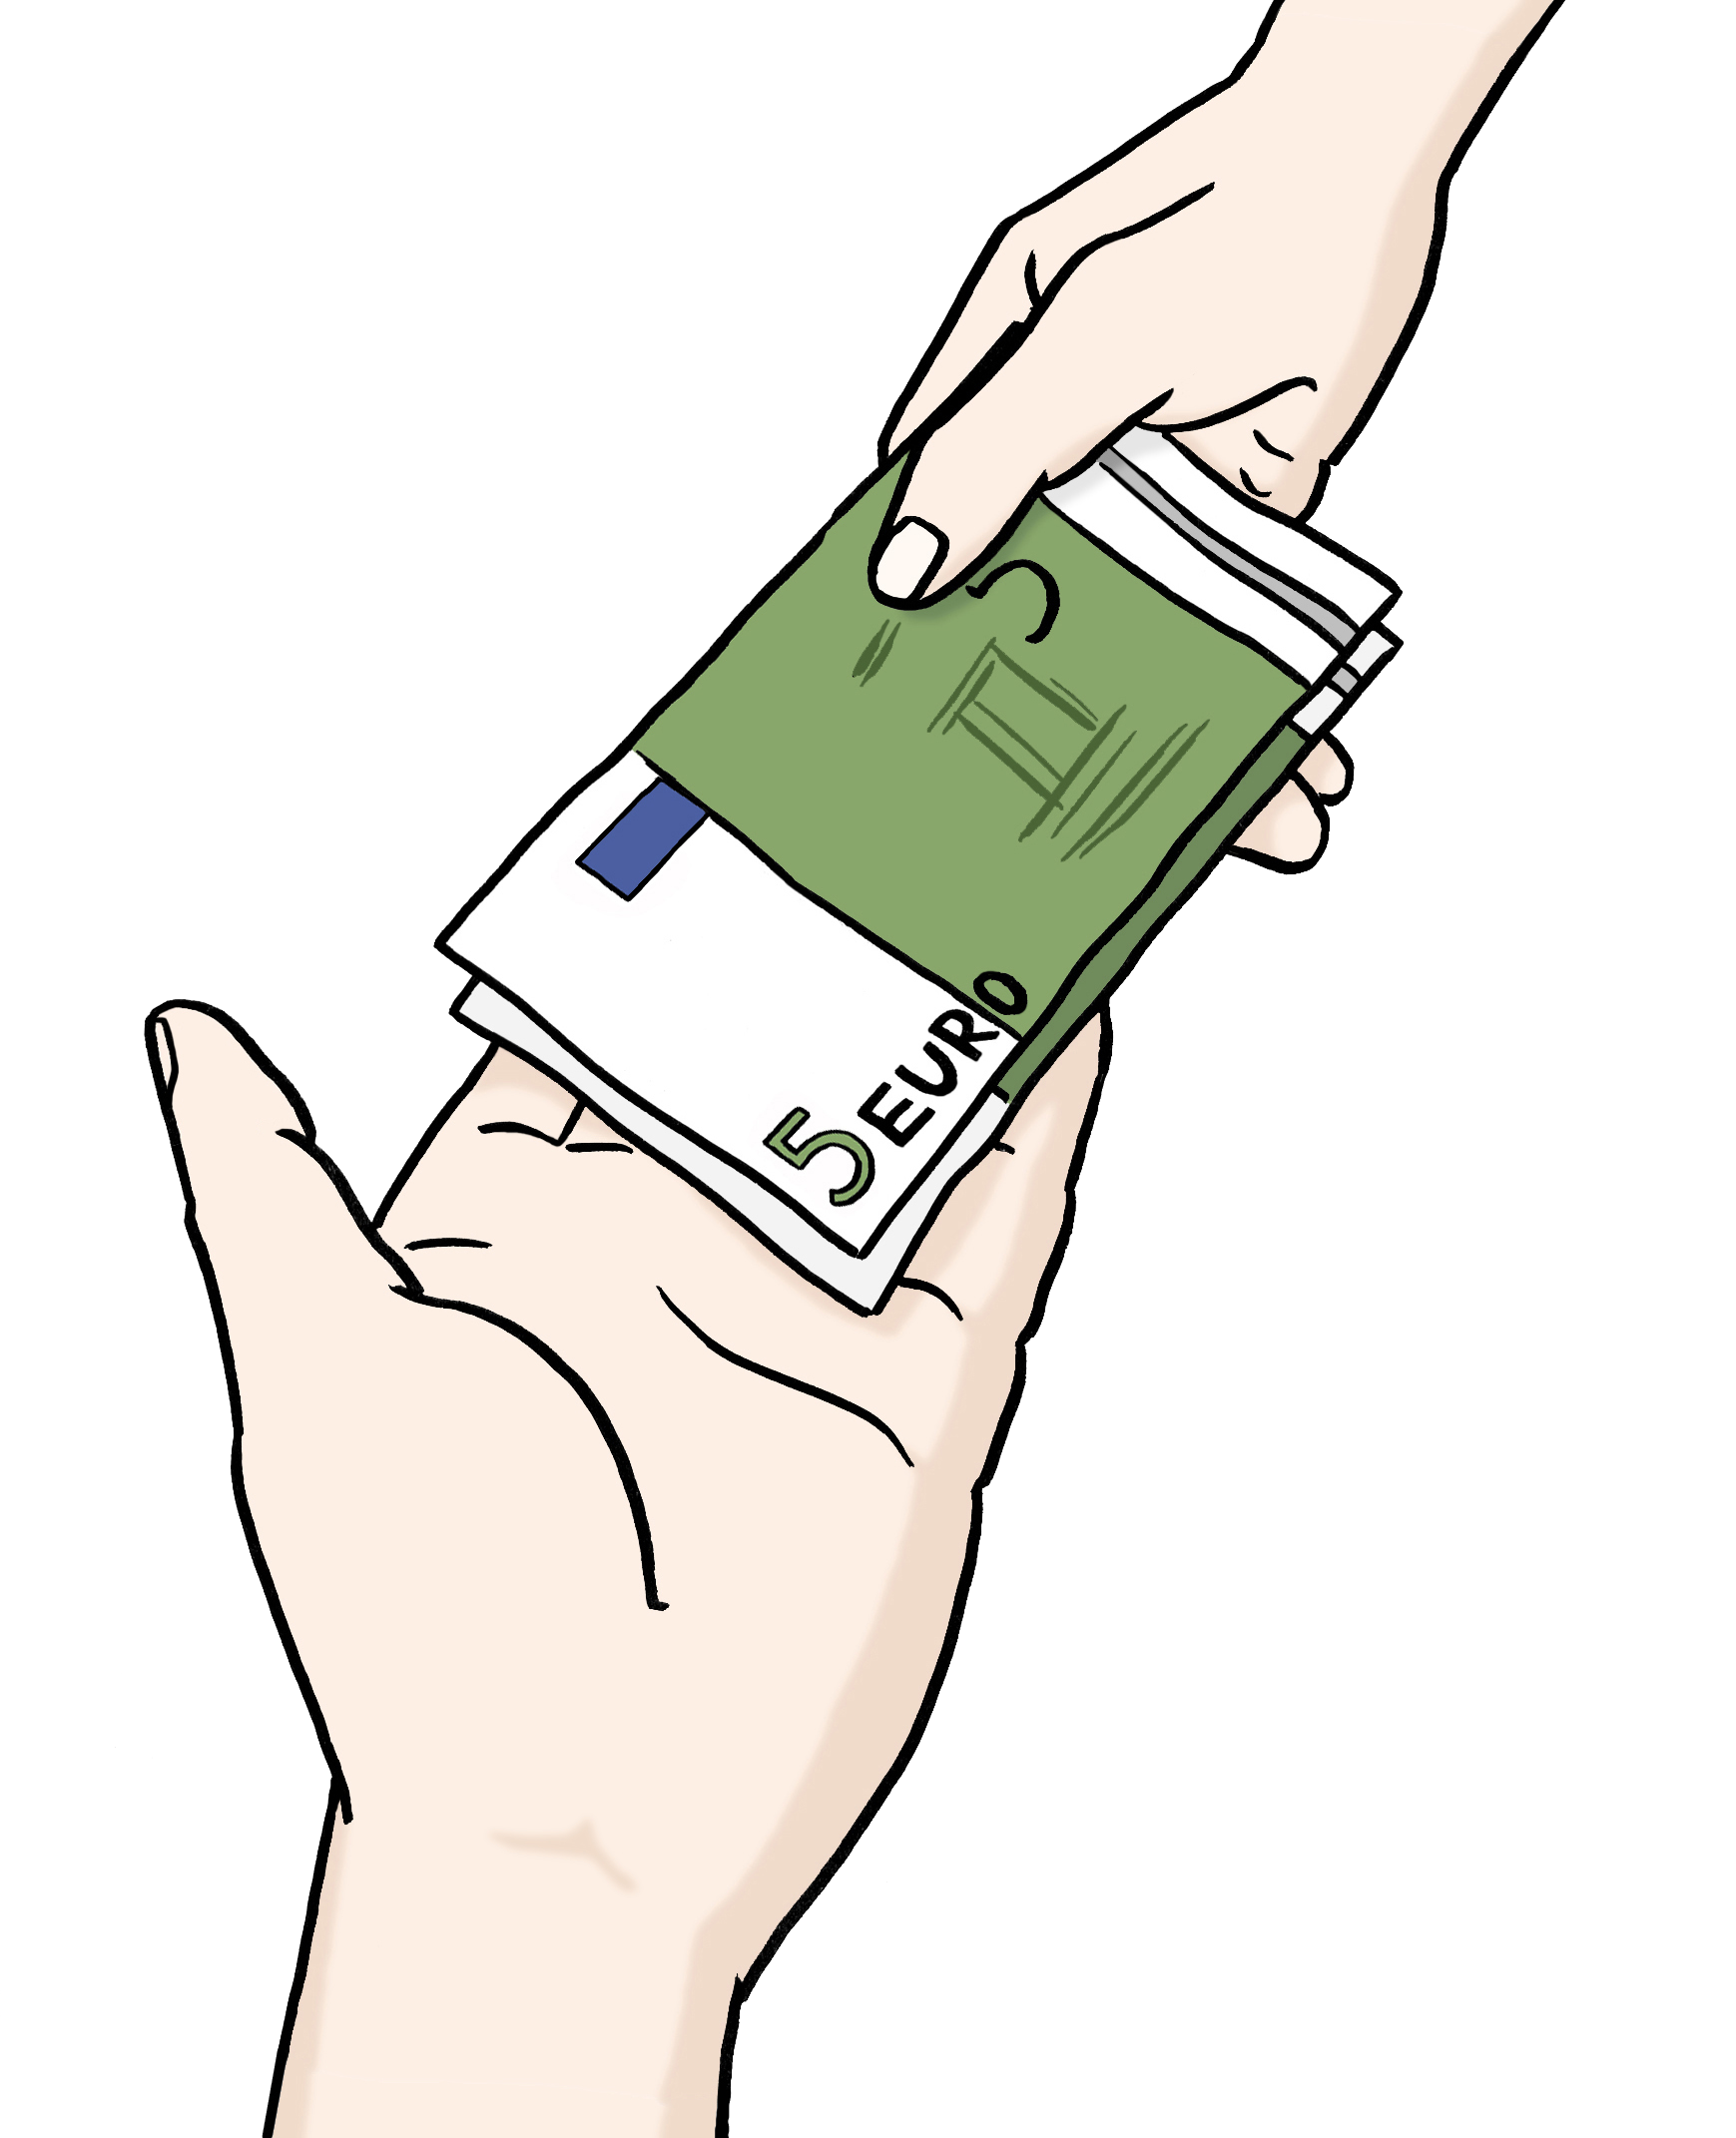 Leichte Sprache Bild: Eine Hand reicht einer anderen Hand mehrere Geldscheine